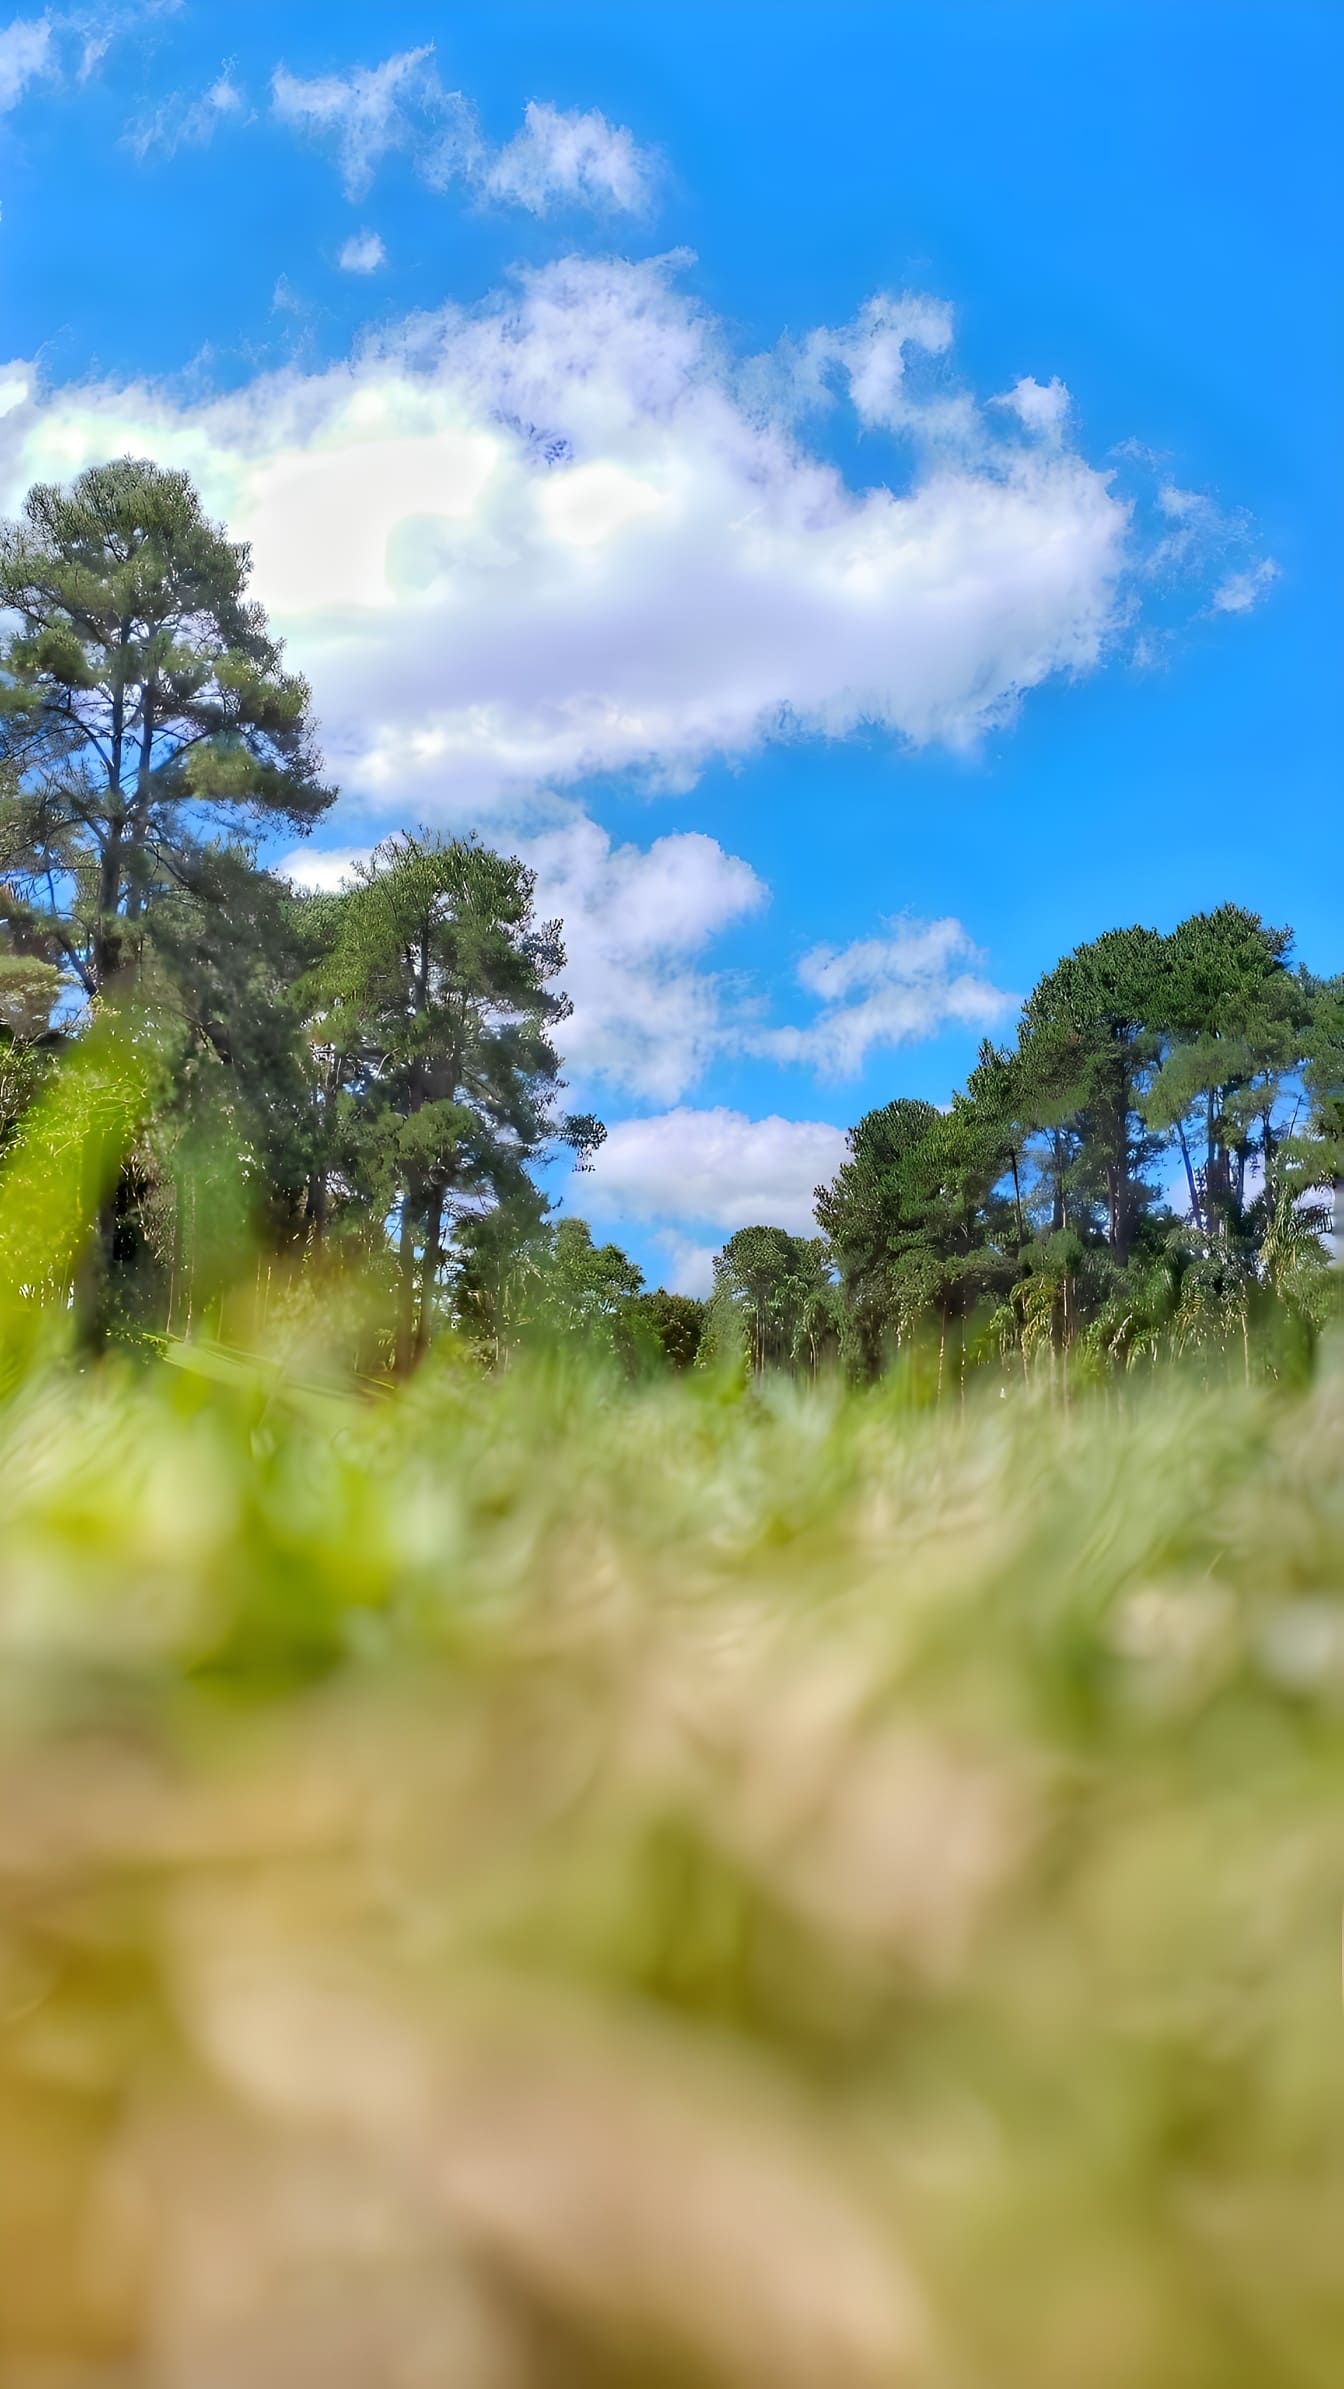 Matalan kulman kuva ruohopellosta ja puista, joiden yläpuolella on sininen taivas